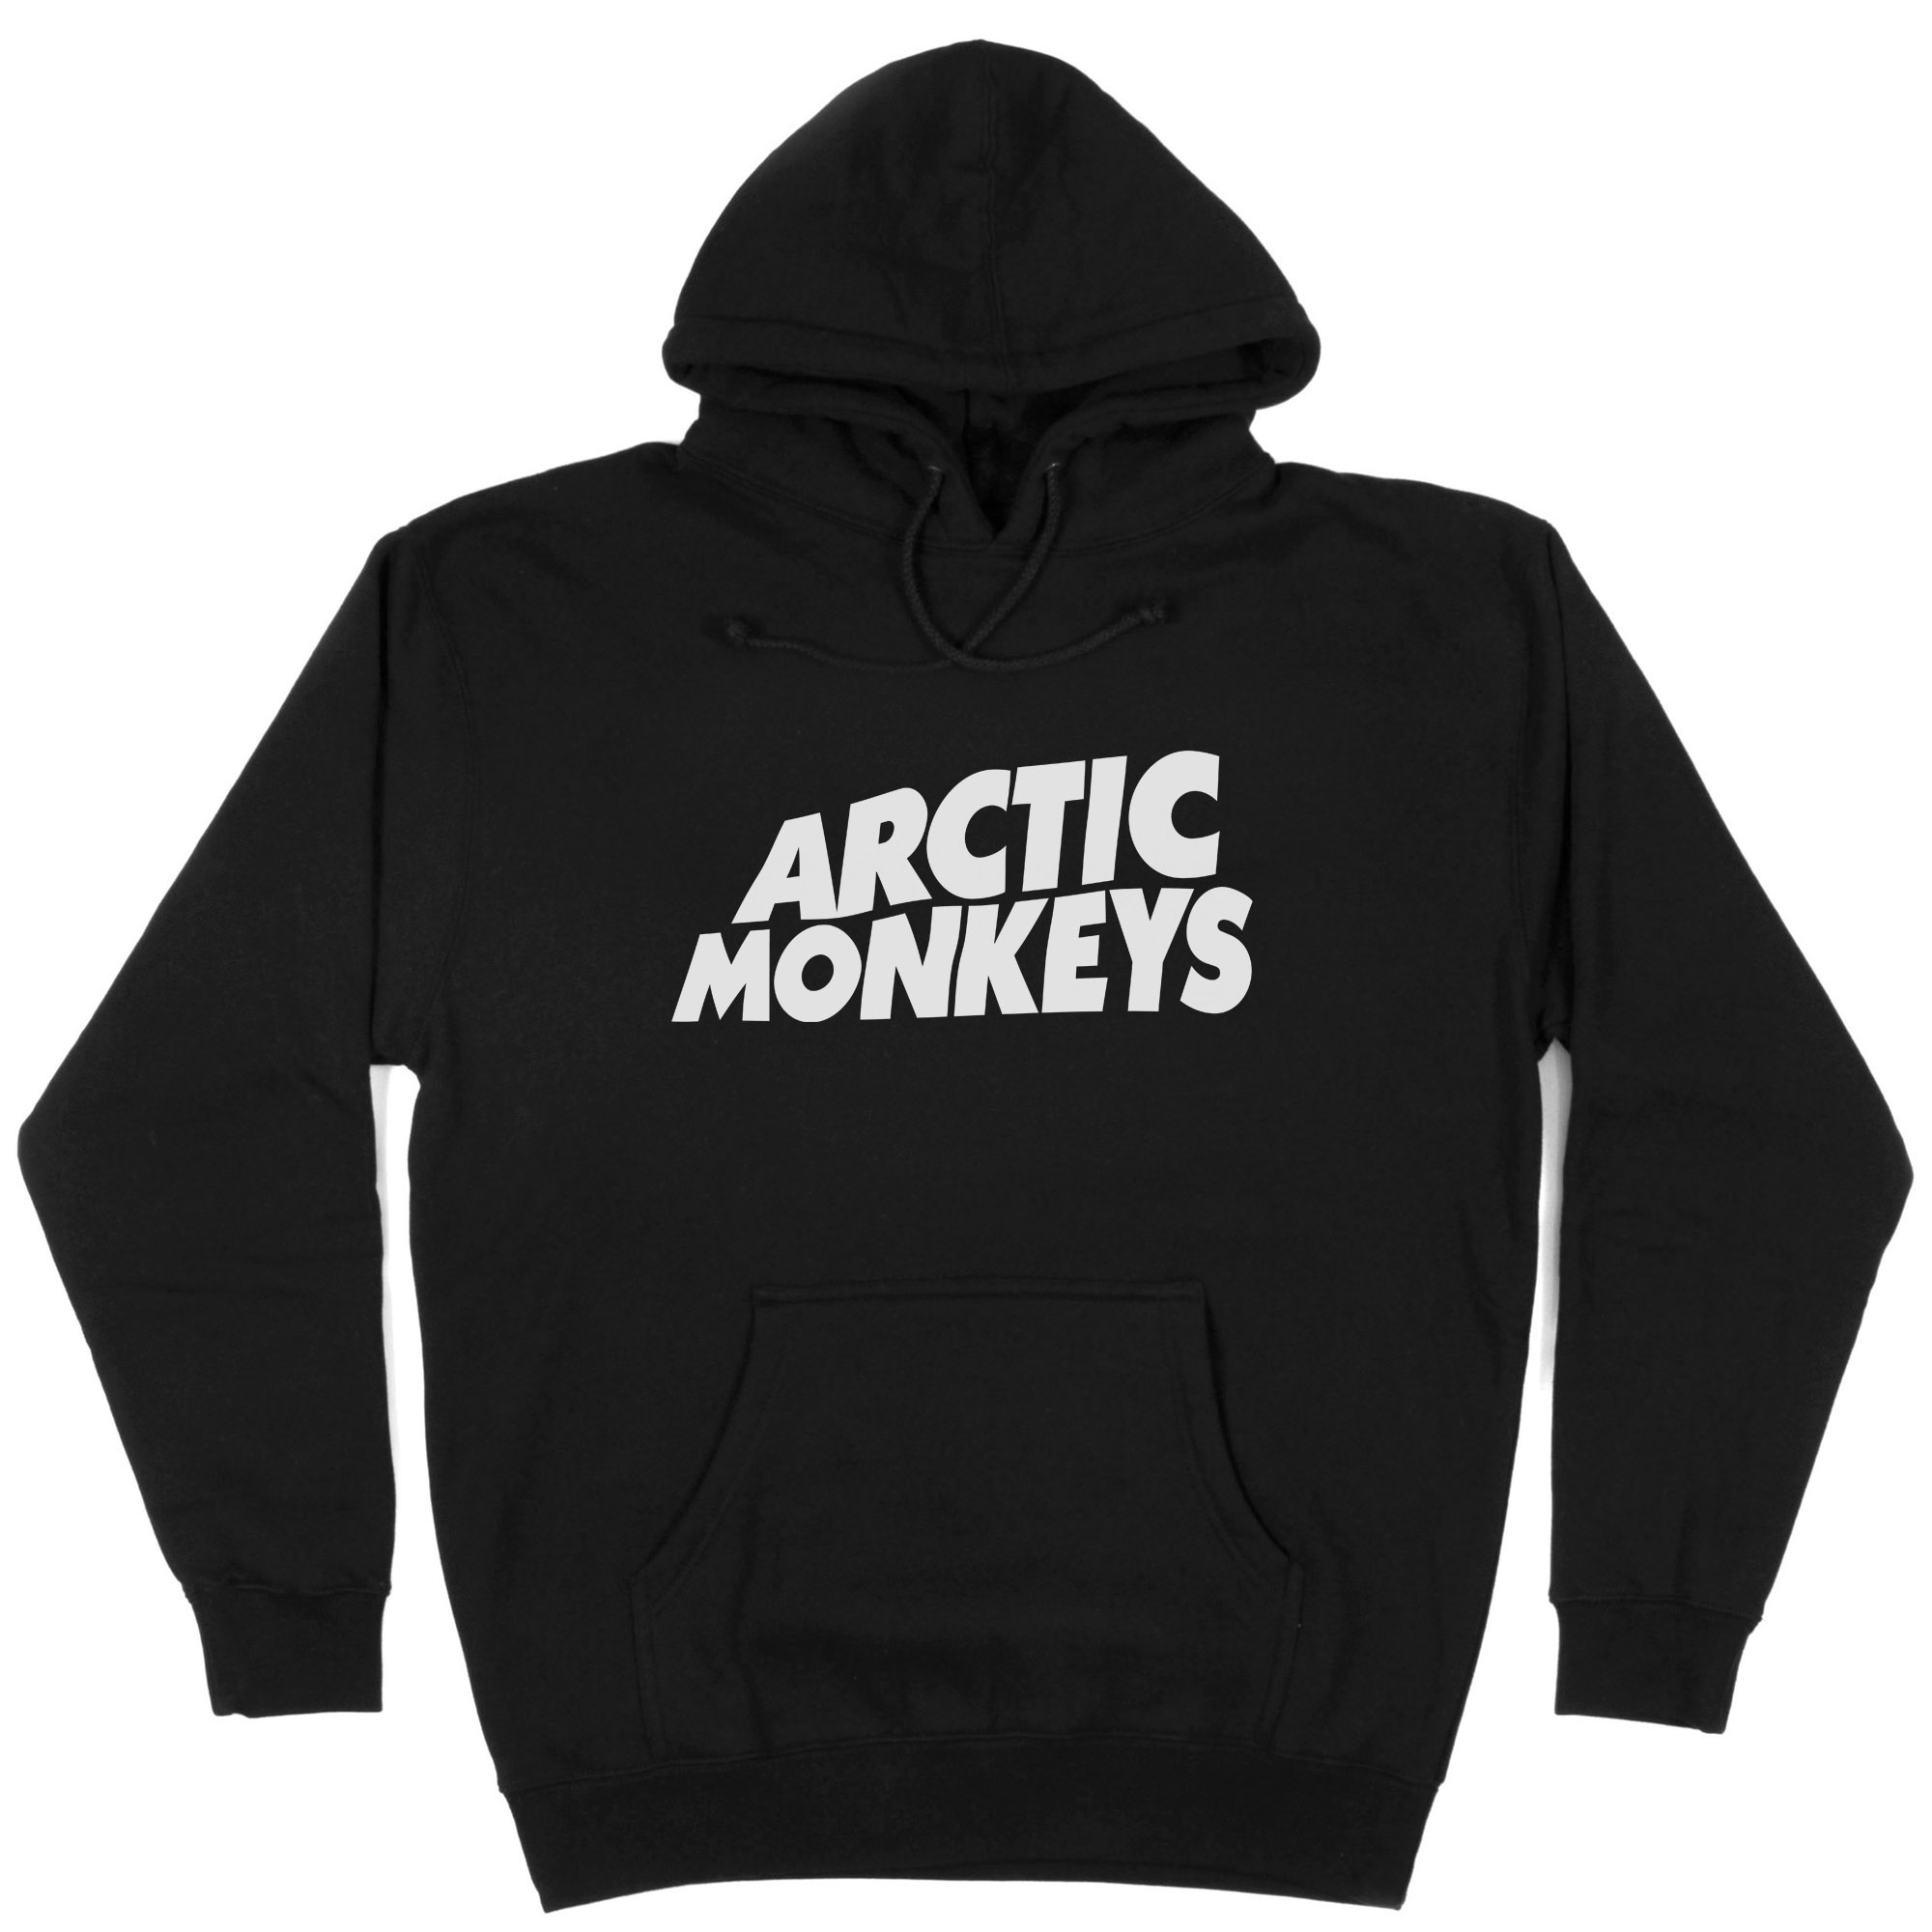 Arctic Monkeys Simple  Hoodie  Cool Tshirt Designs  